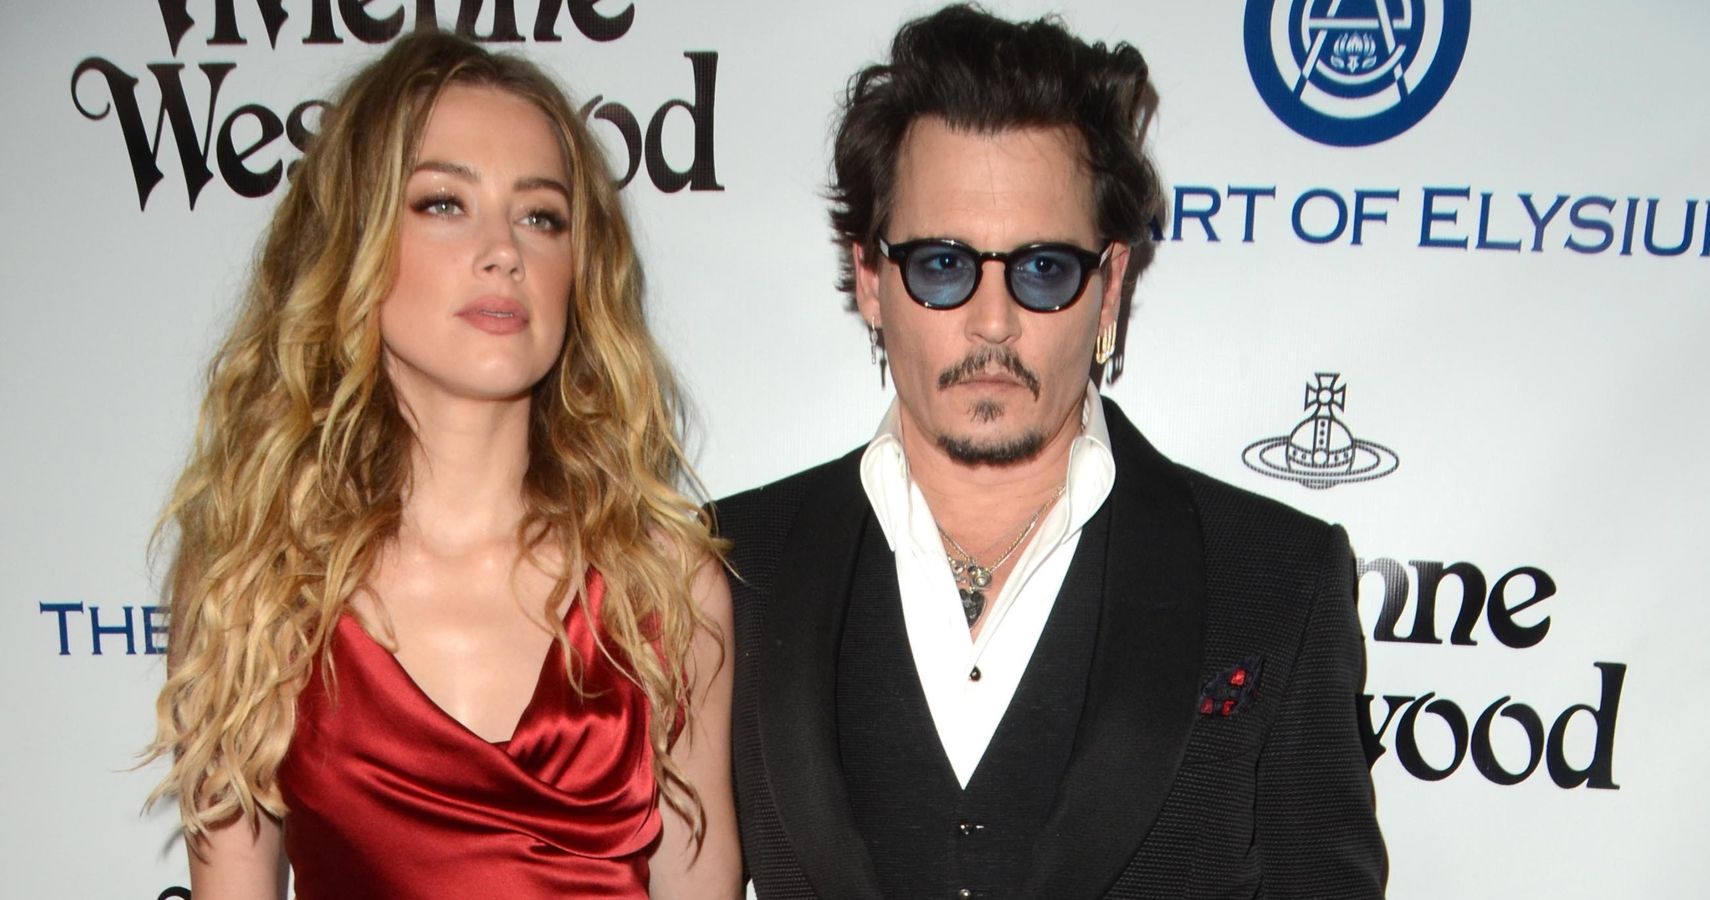 Perguntas mais populares da Internet sobre o julgamento de Johnny Depp-Amber Heard, respondidas